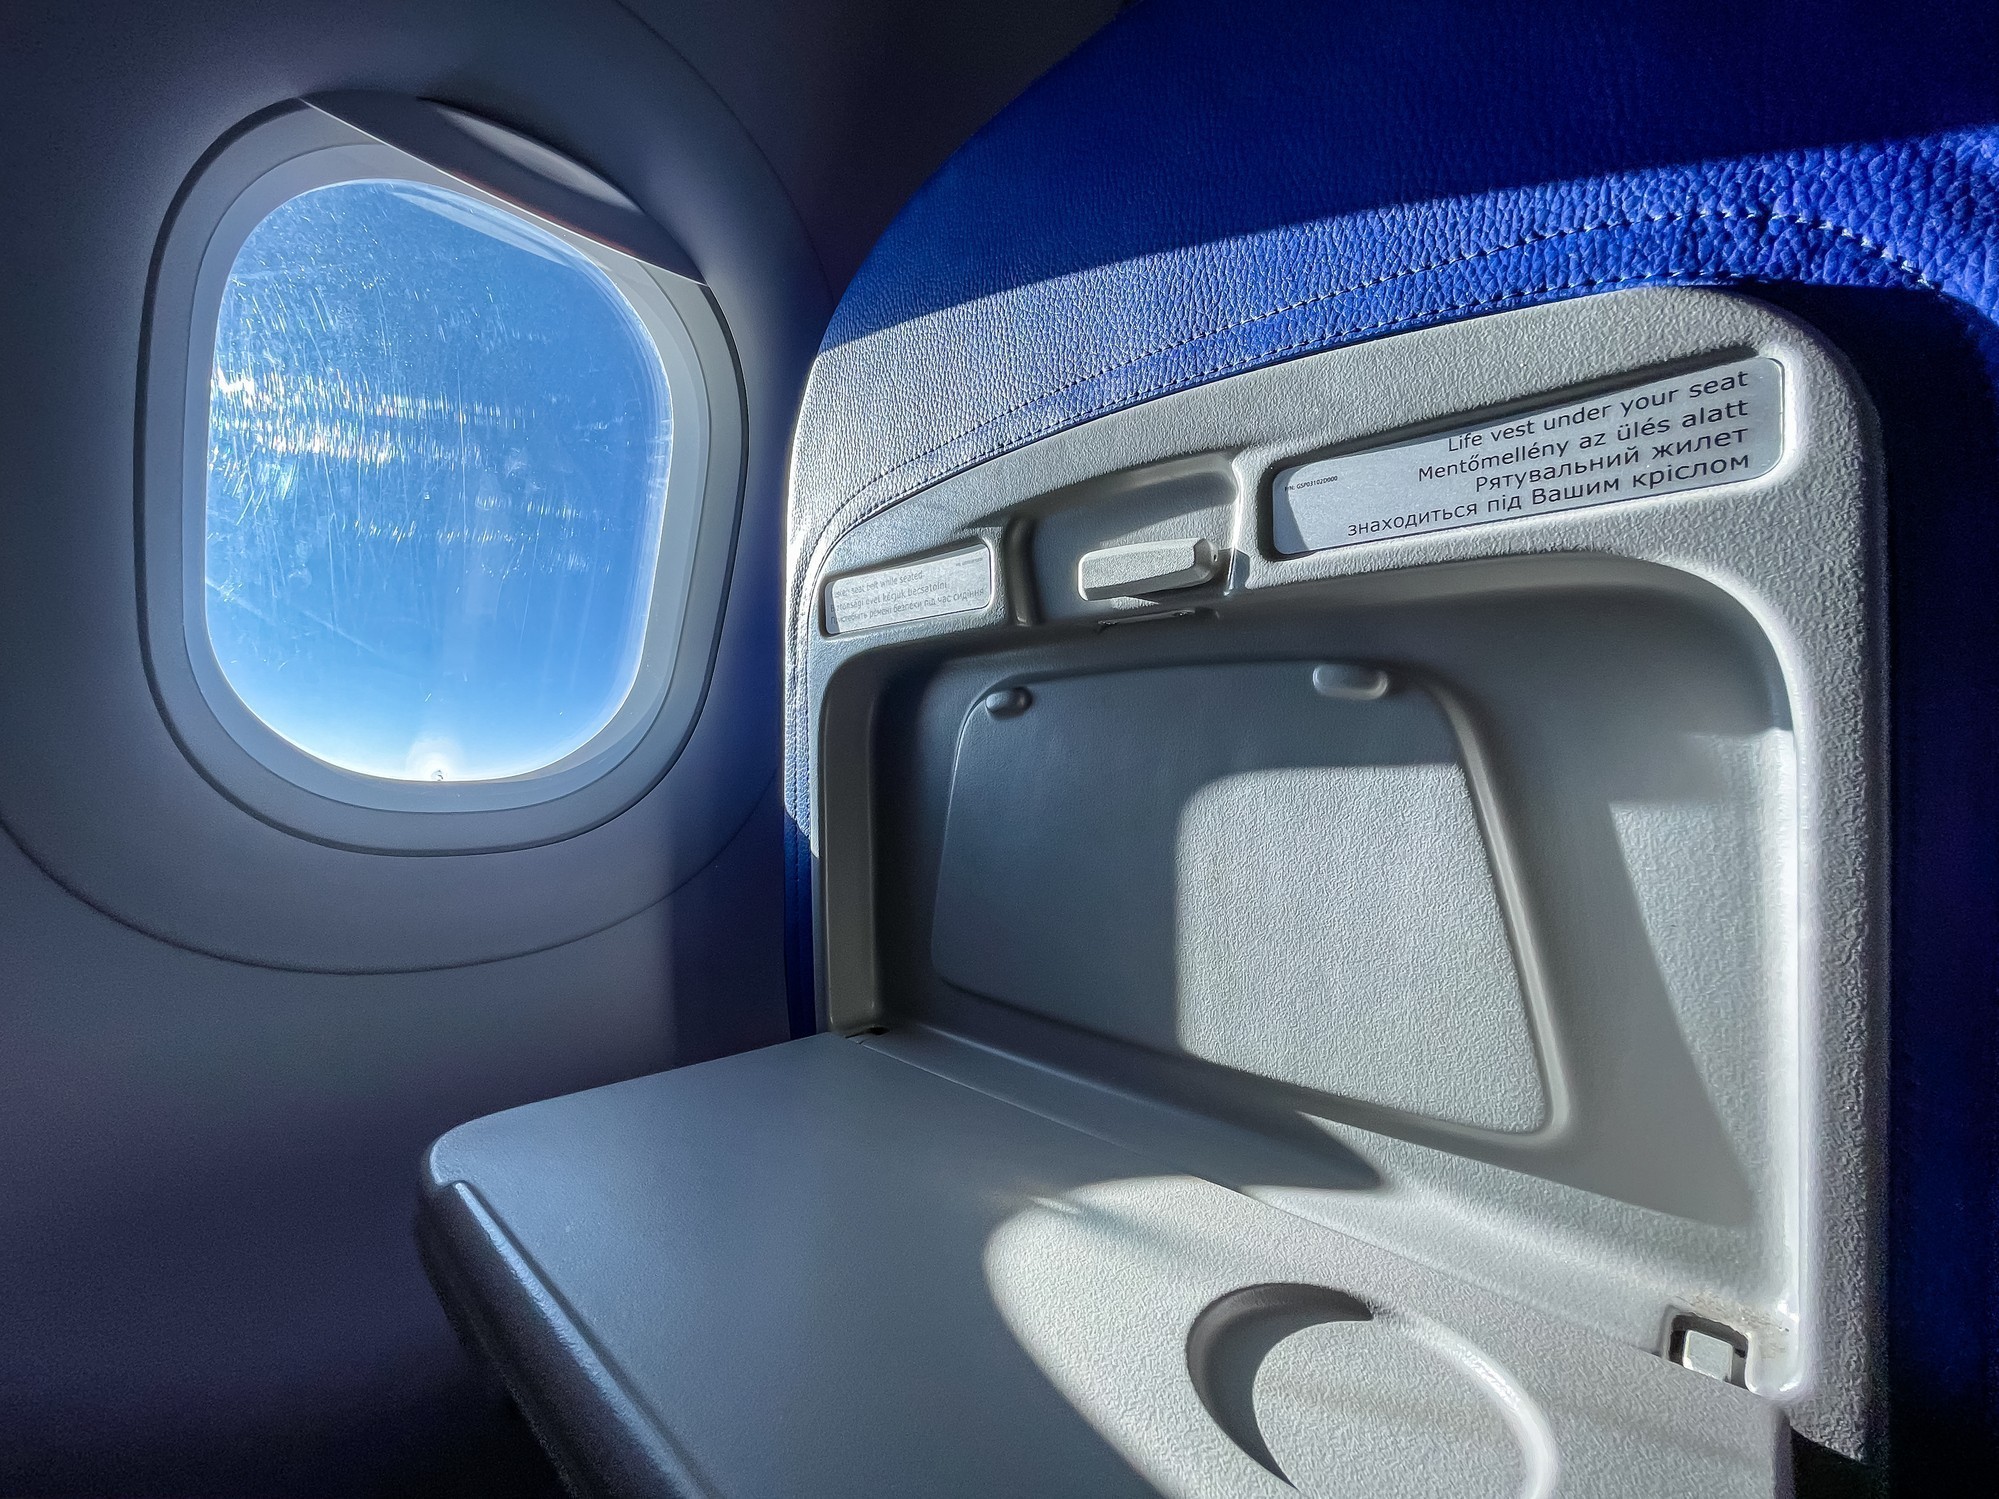 Καλοί τρόποι στο αεροπλάνο: Είναι σωστό να “ρίχνουμε” το κάθισμά μας μειώνοντας τον χώρο του επιβάτη πίσω μας;